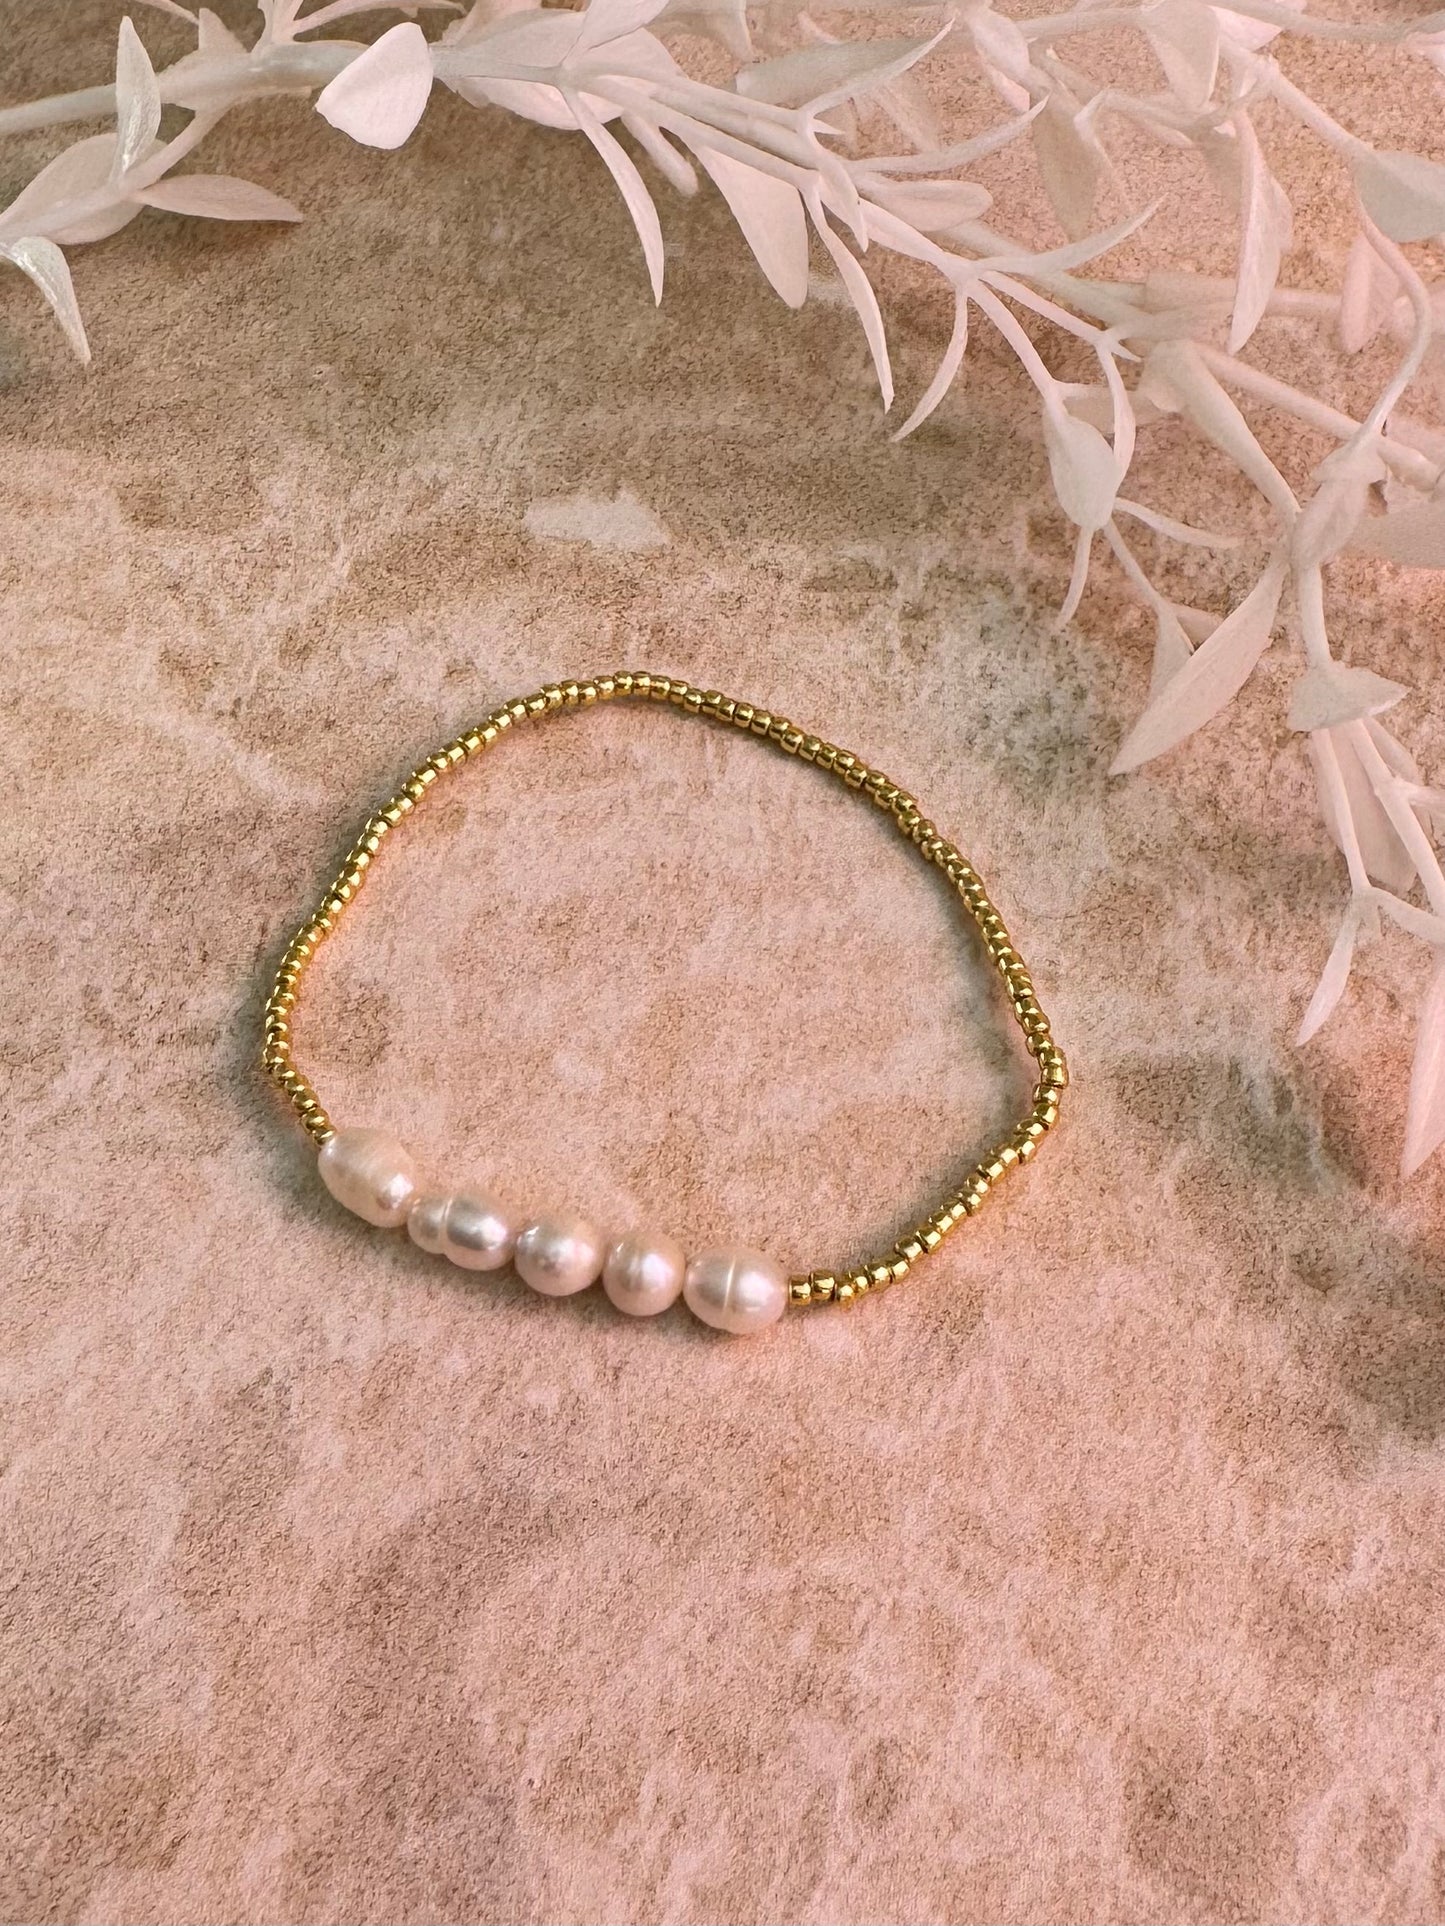 Baroque Pearl Bracelet - 5 Pearls